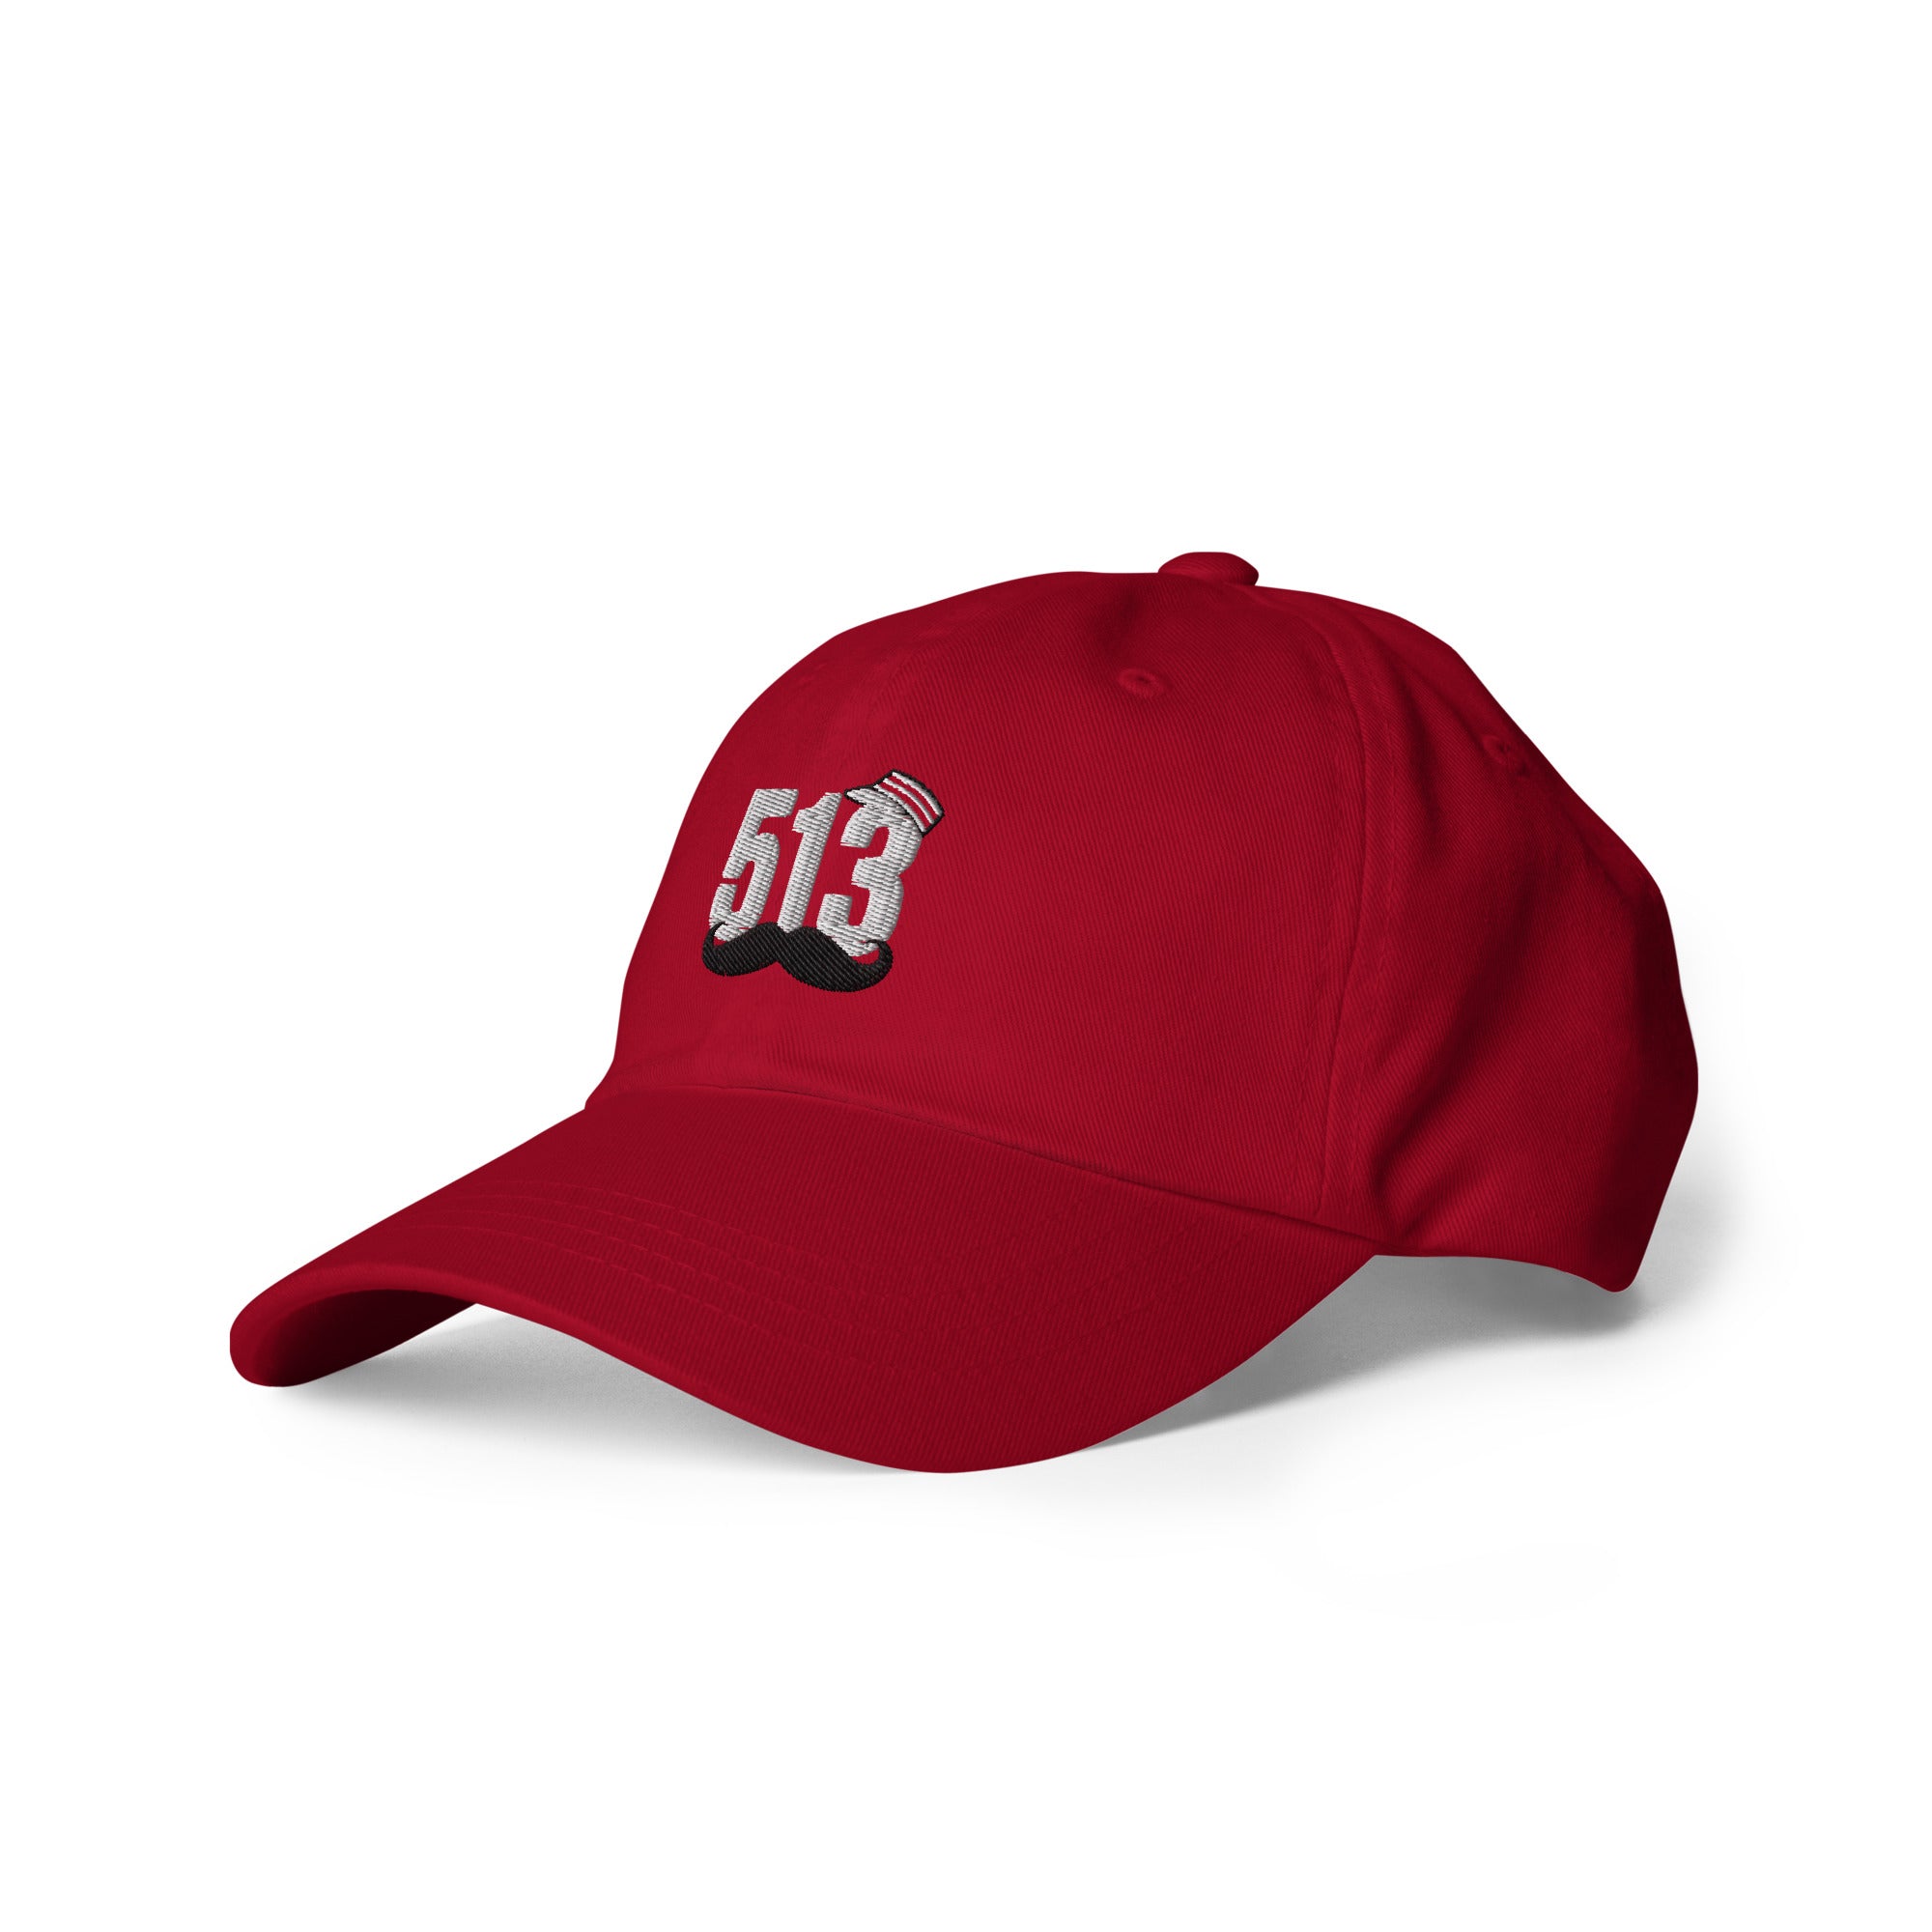 513 Reds Dad hat